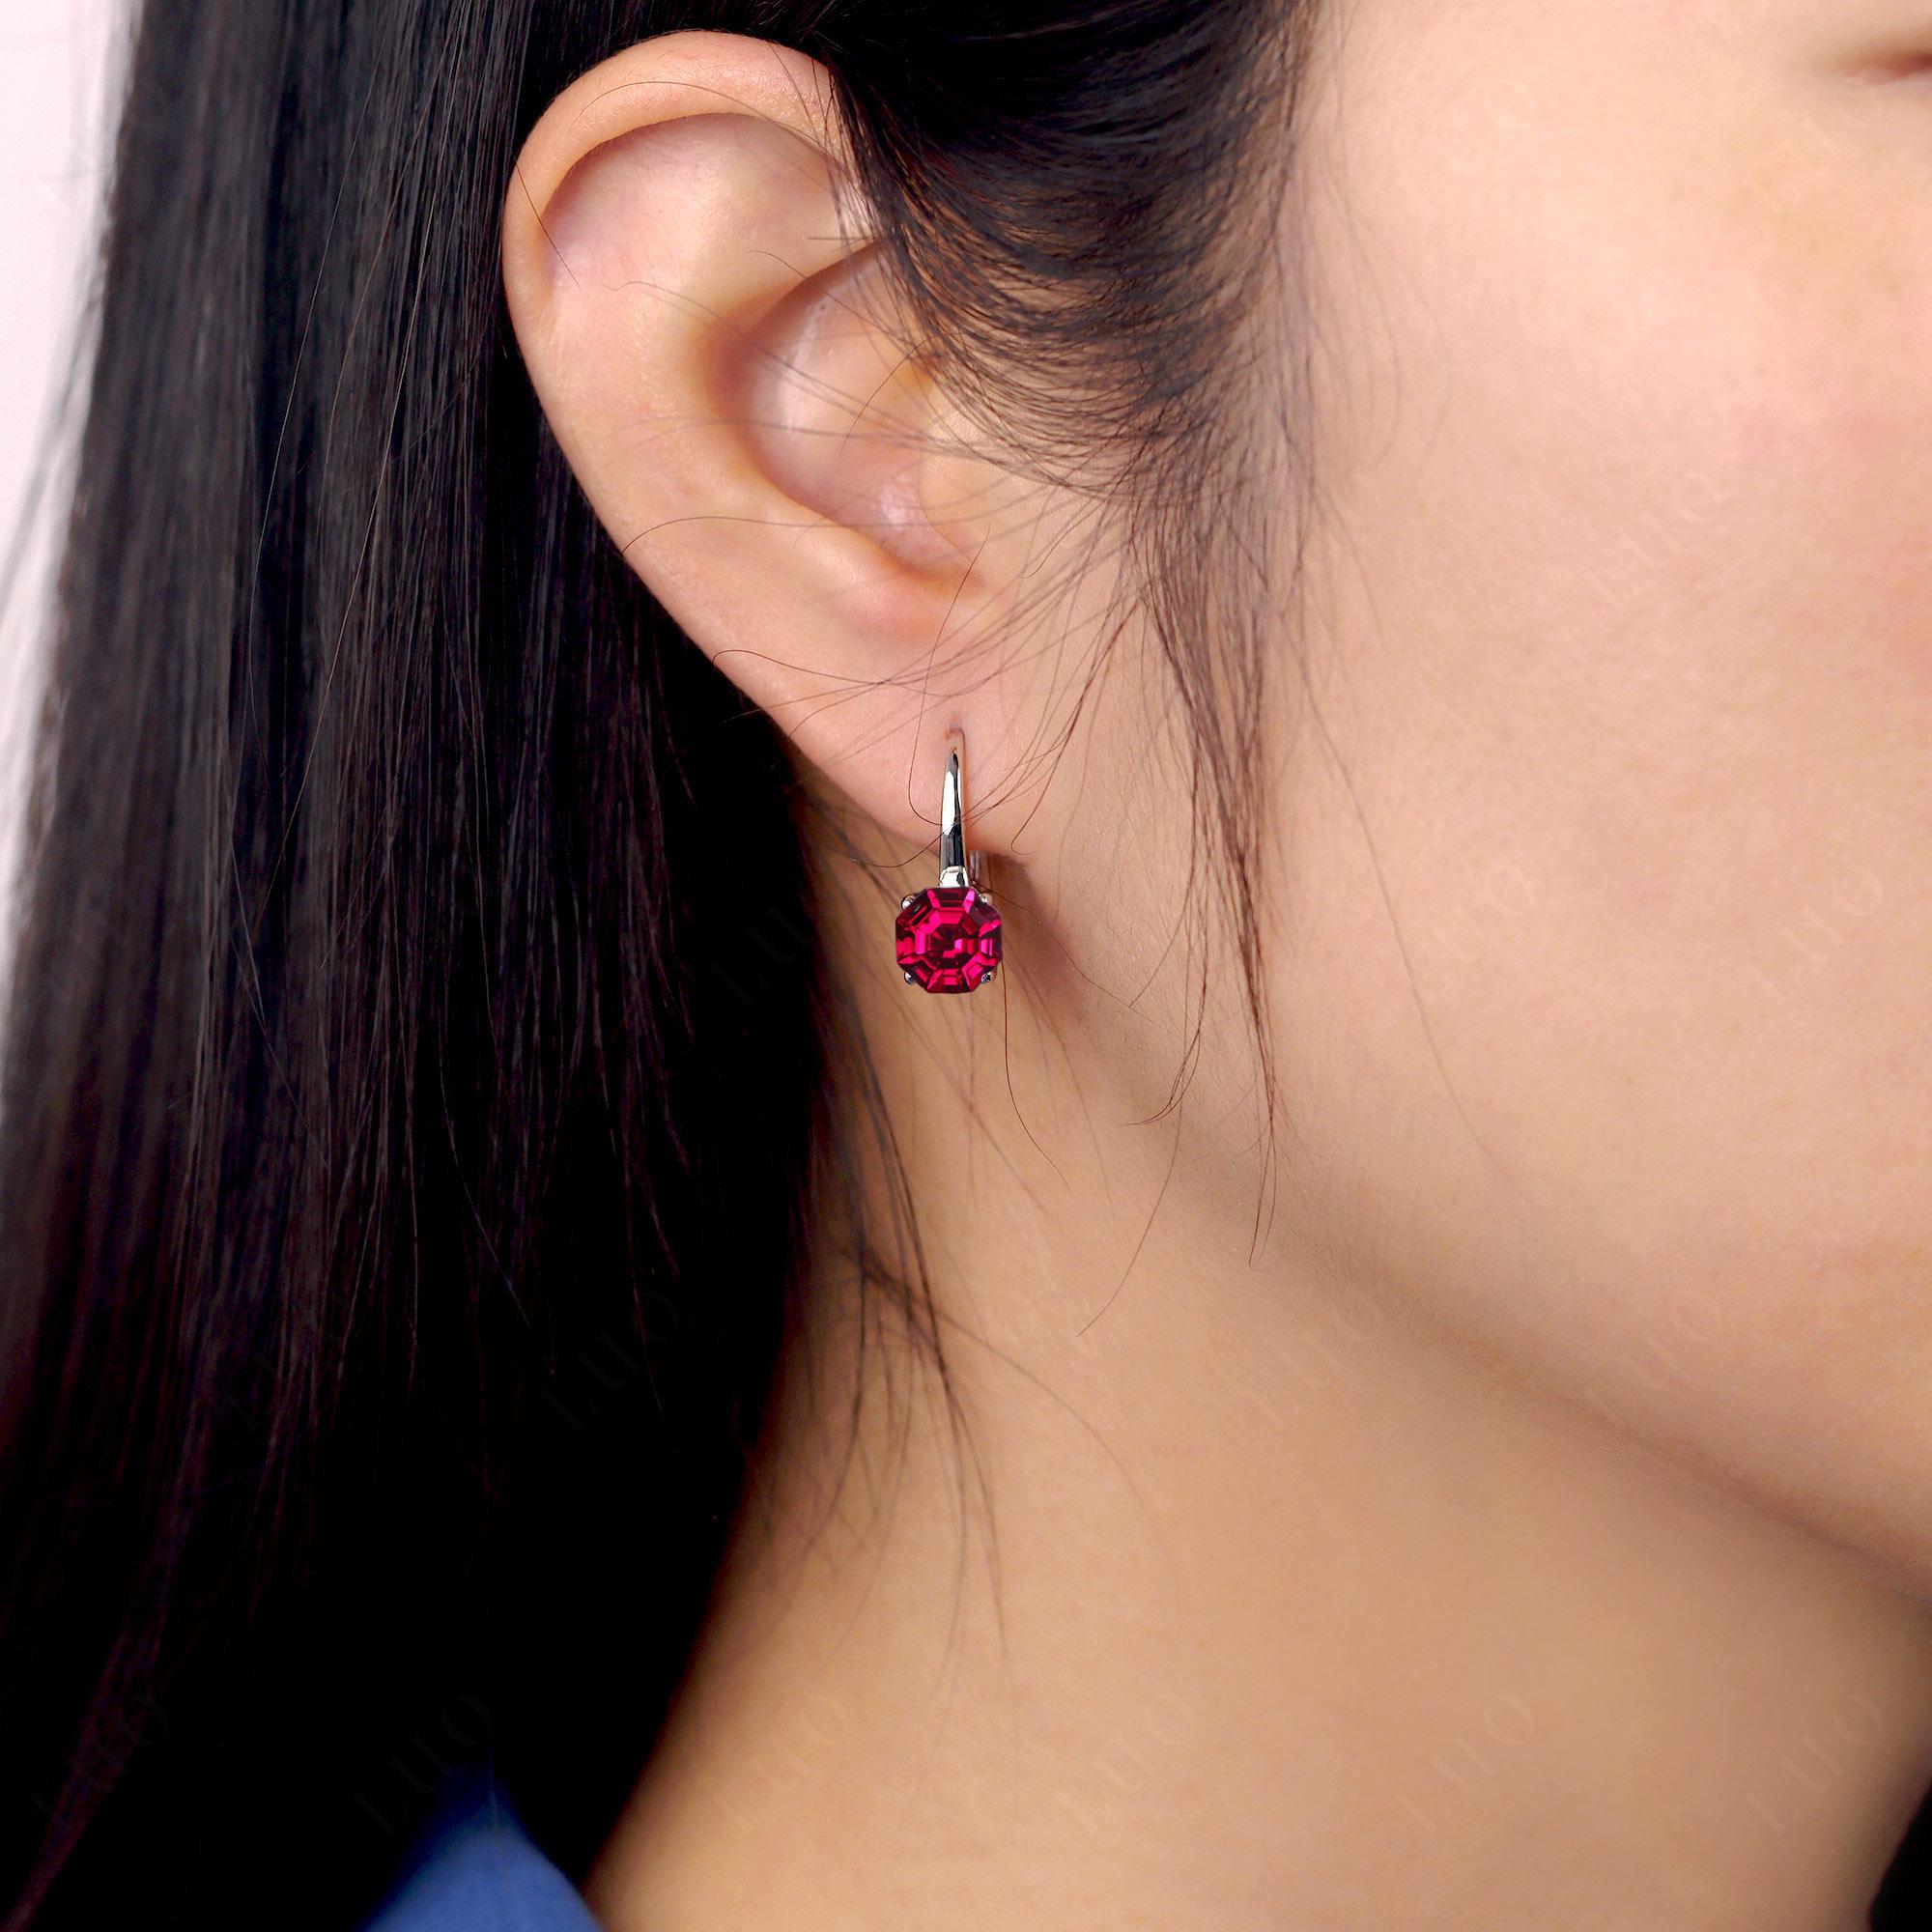 Octagon Cut Ruby Leverback Earrings - LUO Jewelry